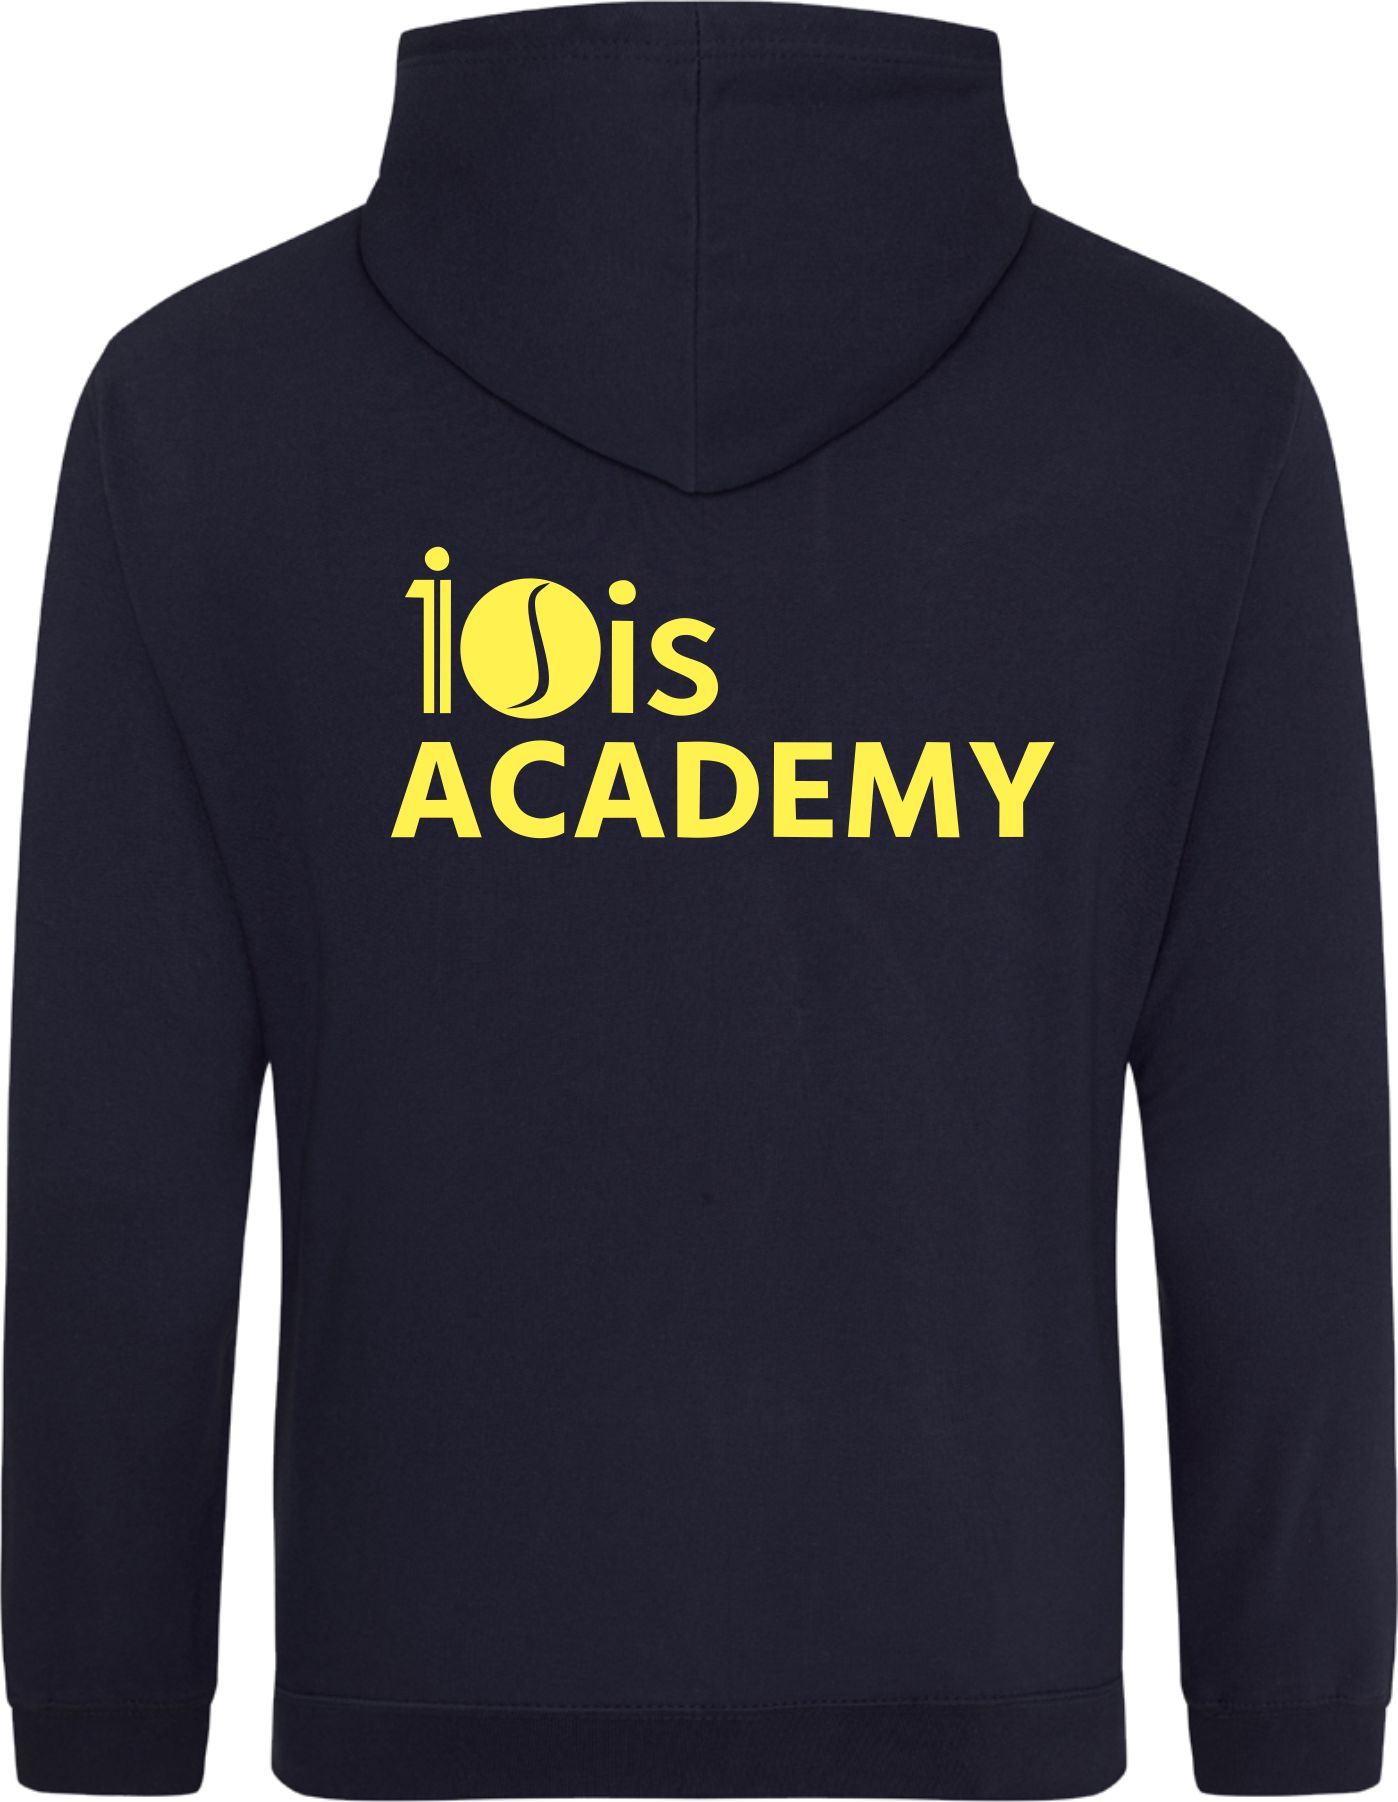 10is Academy Hoodie (Kids)